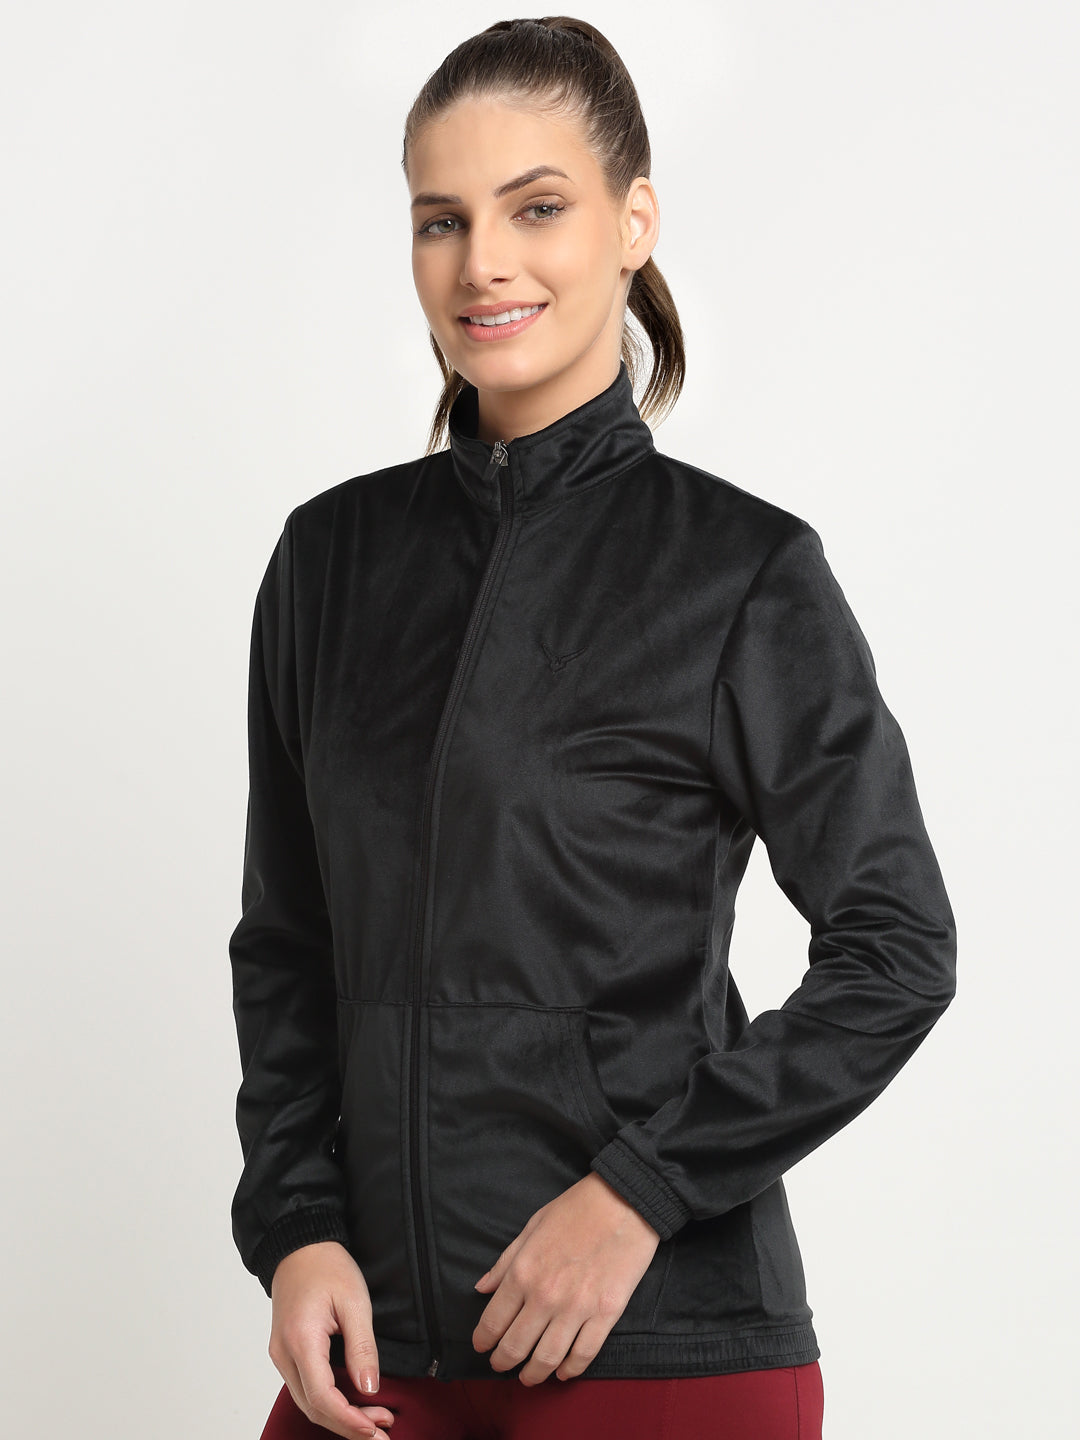 Invincible Women's Velour Full Zip Jacket